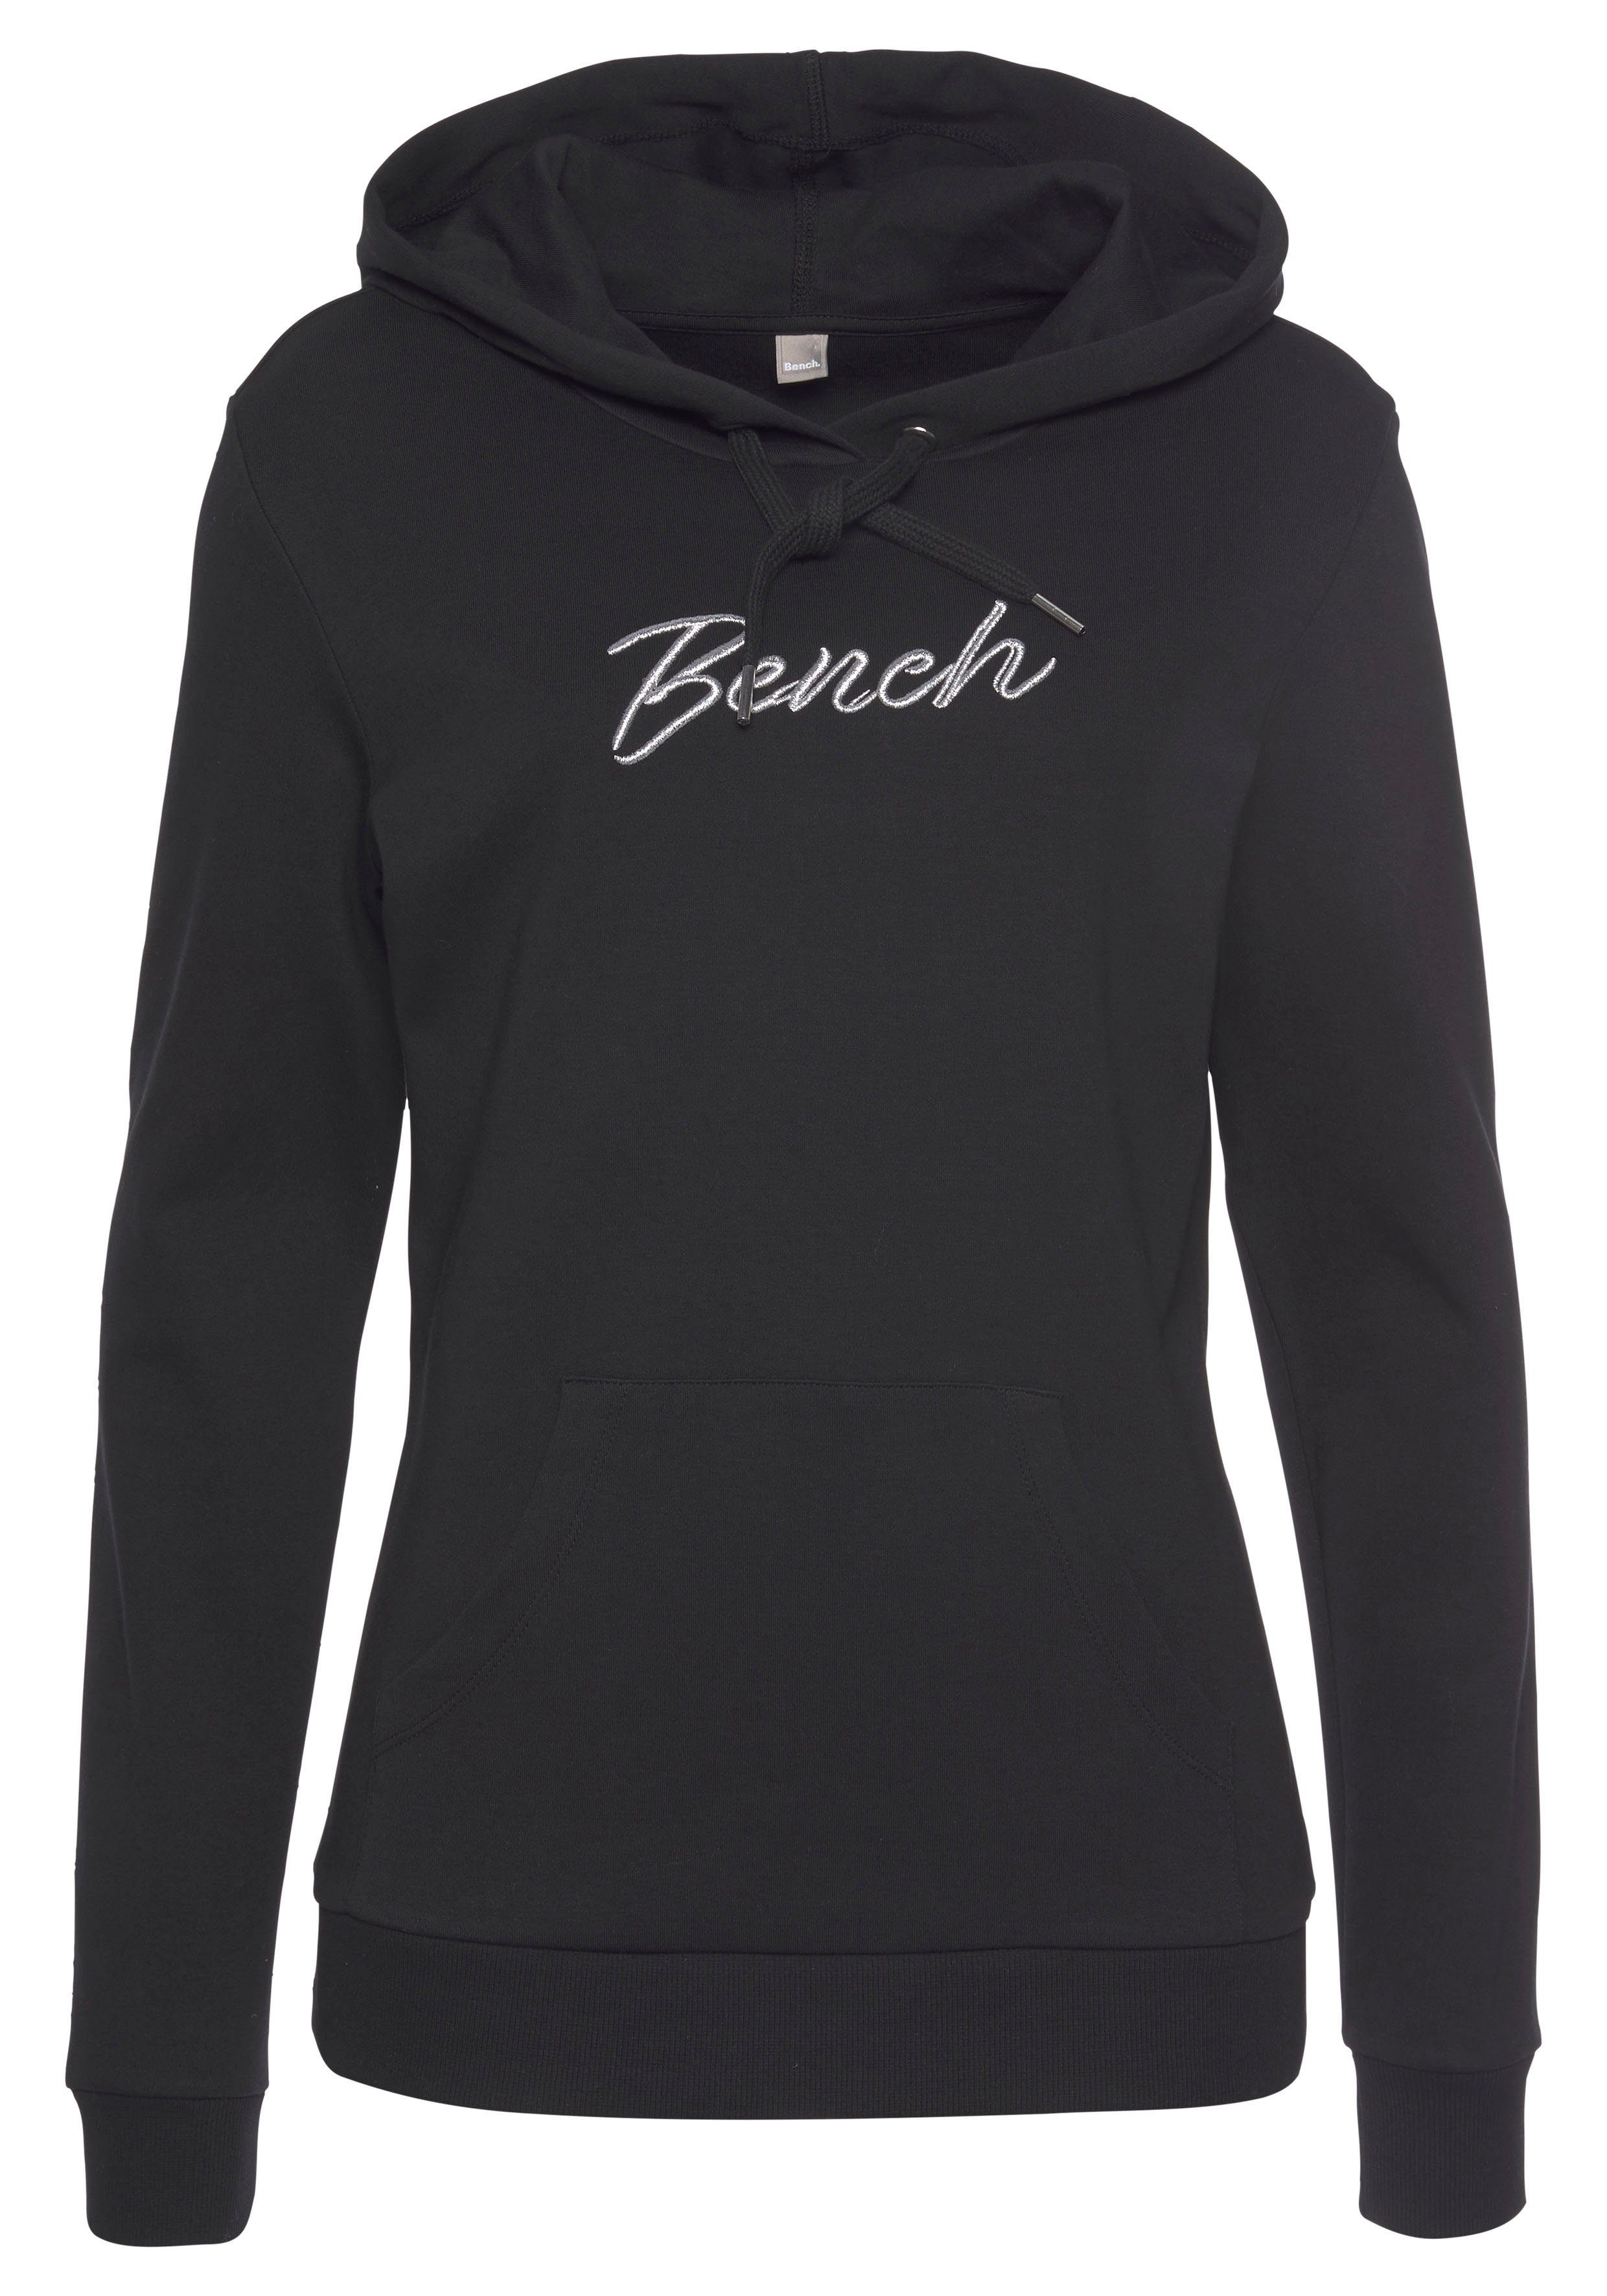 Bench. Loungewear Kapuzensweatshirt mit glänzender Logostickerei, Loungeanzug, Hoodie schwarz